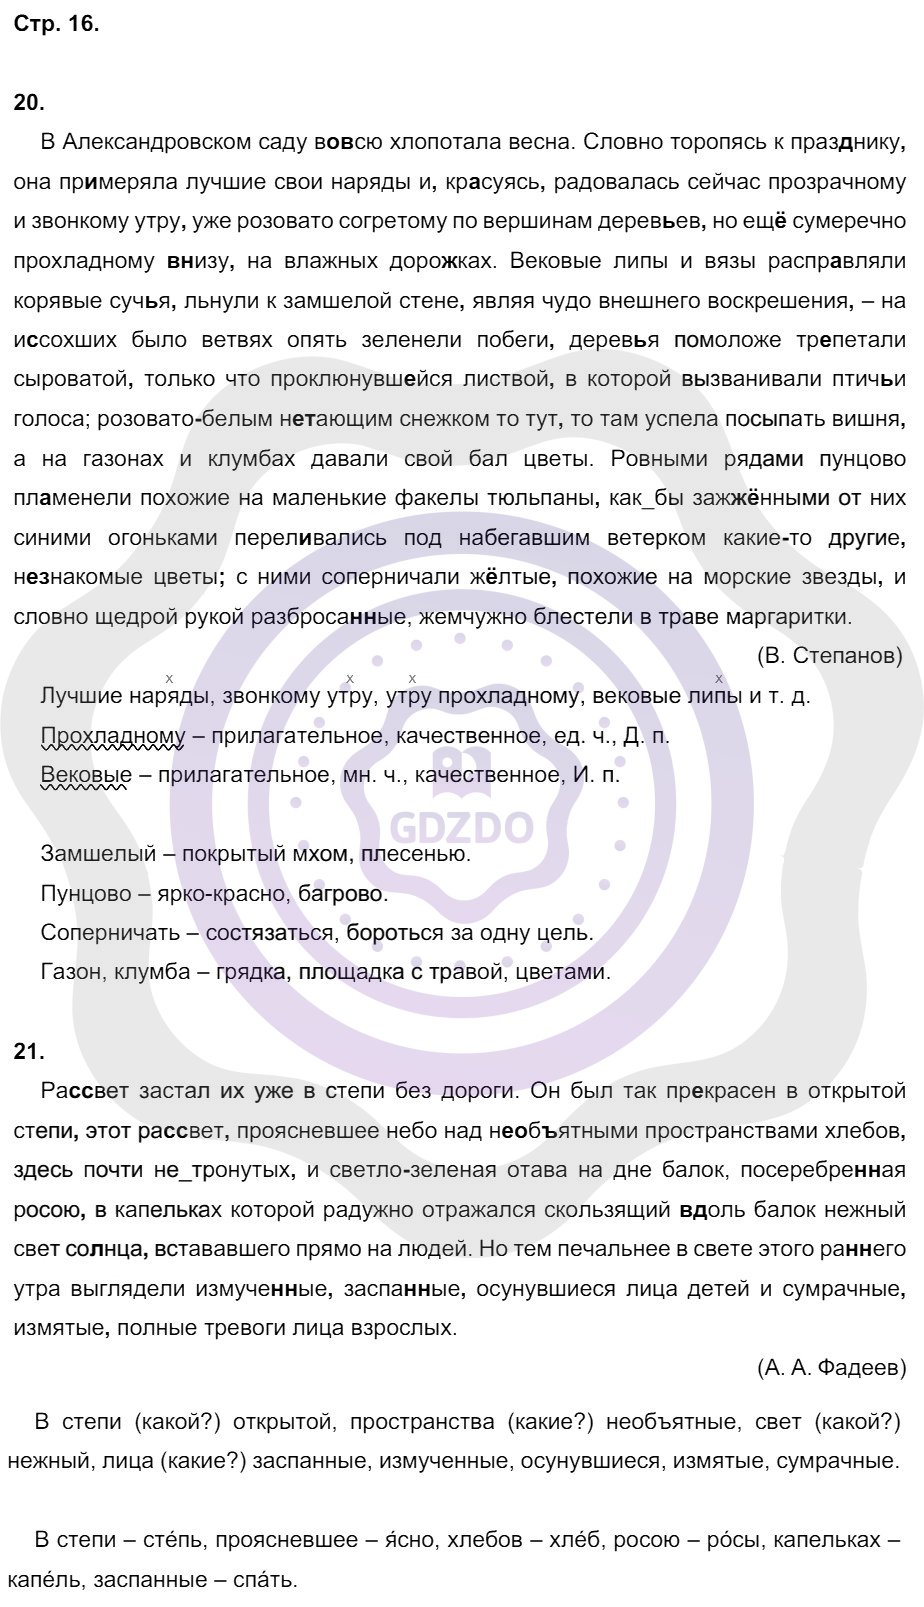 Ответы Русский язык 8 класс Кулаева Л. М. Страницы 16